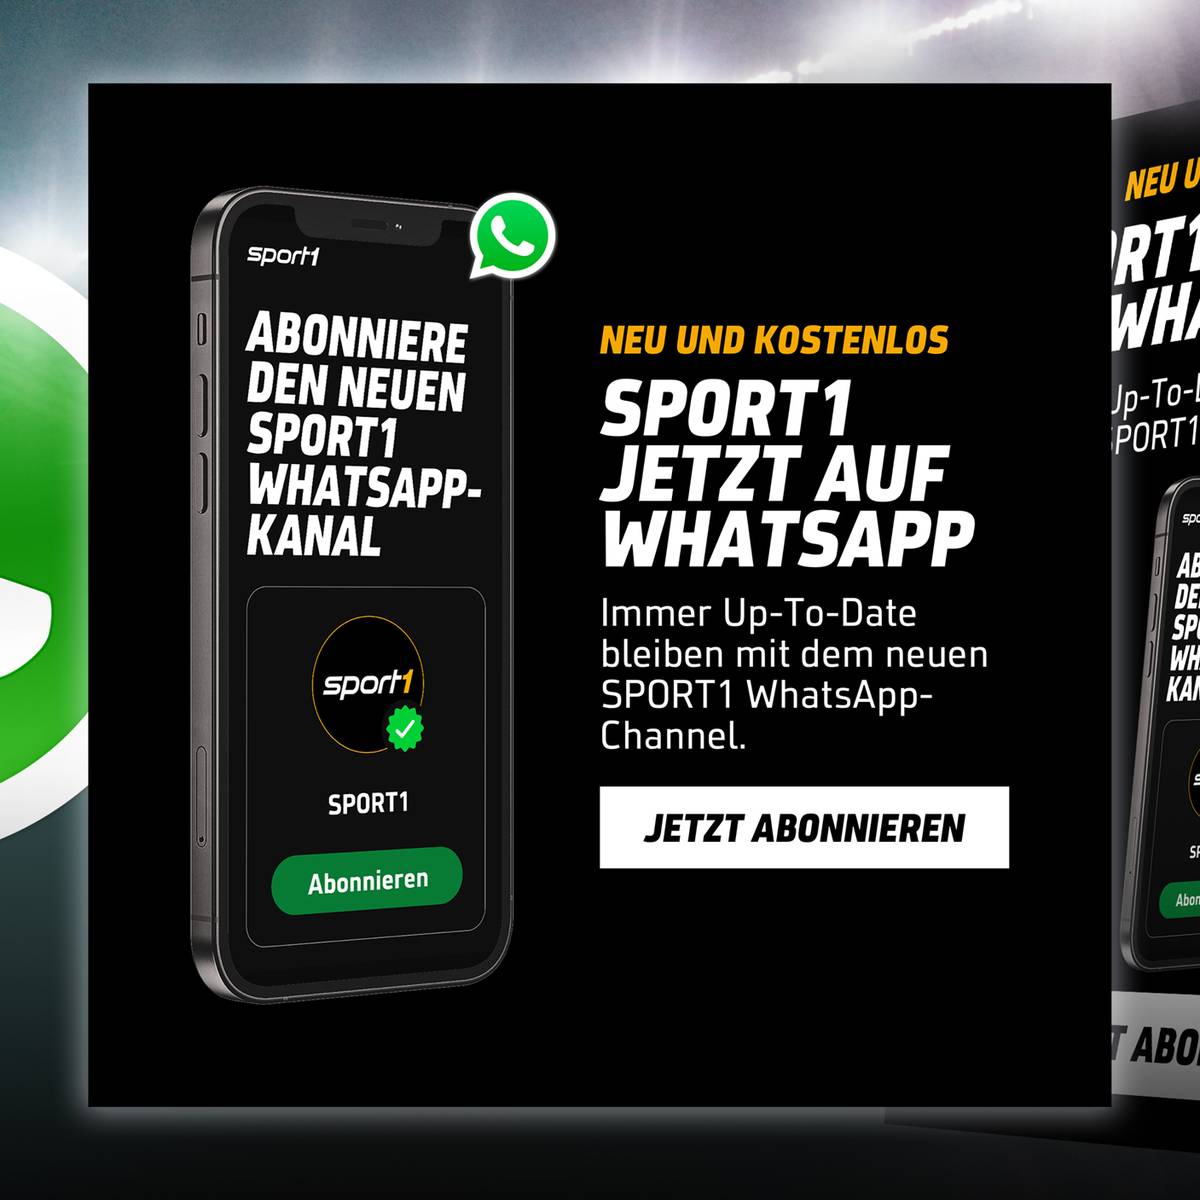 SPORT1 bei WhatsApp! Sport-News und Videos direkt aufs Handy